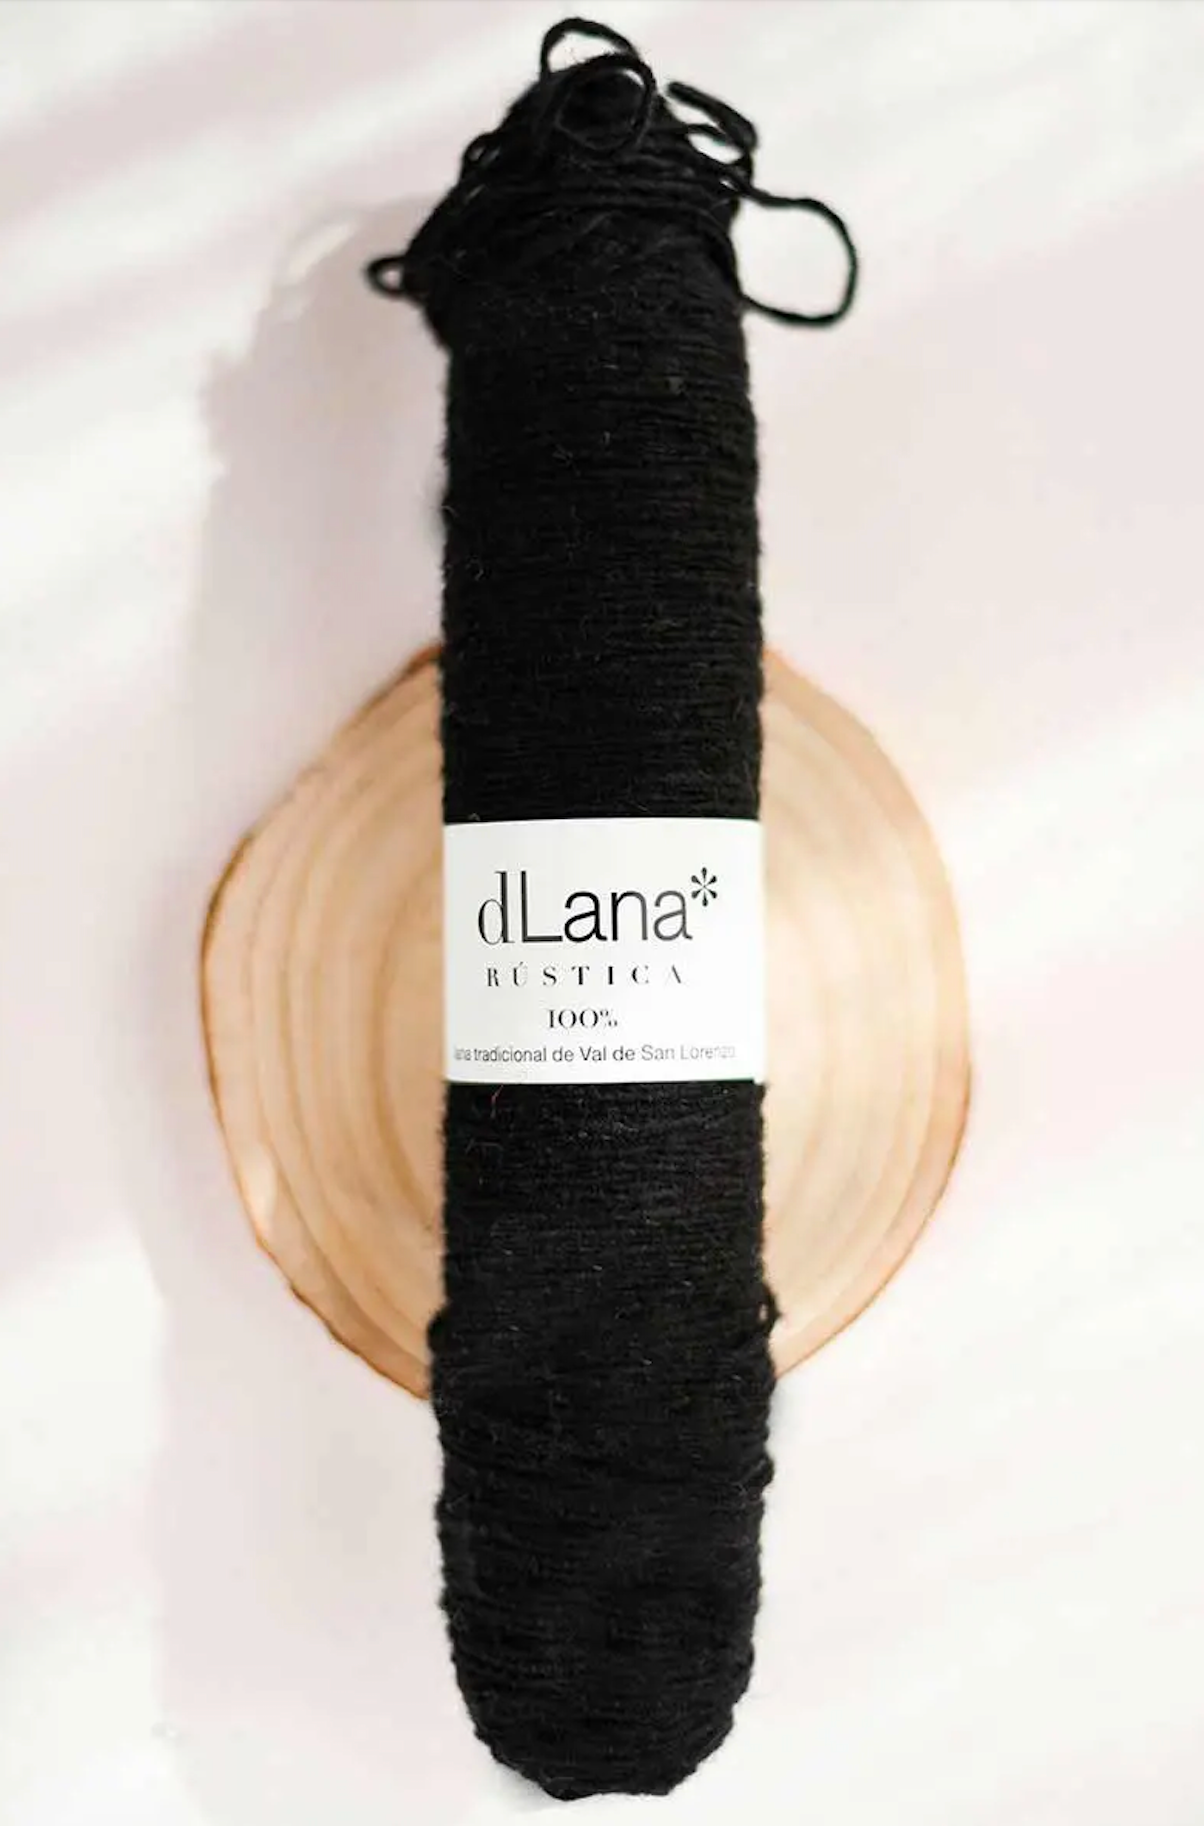 dLana Rustic Wool Yarn - Darks - The Unusual Pear